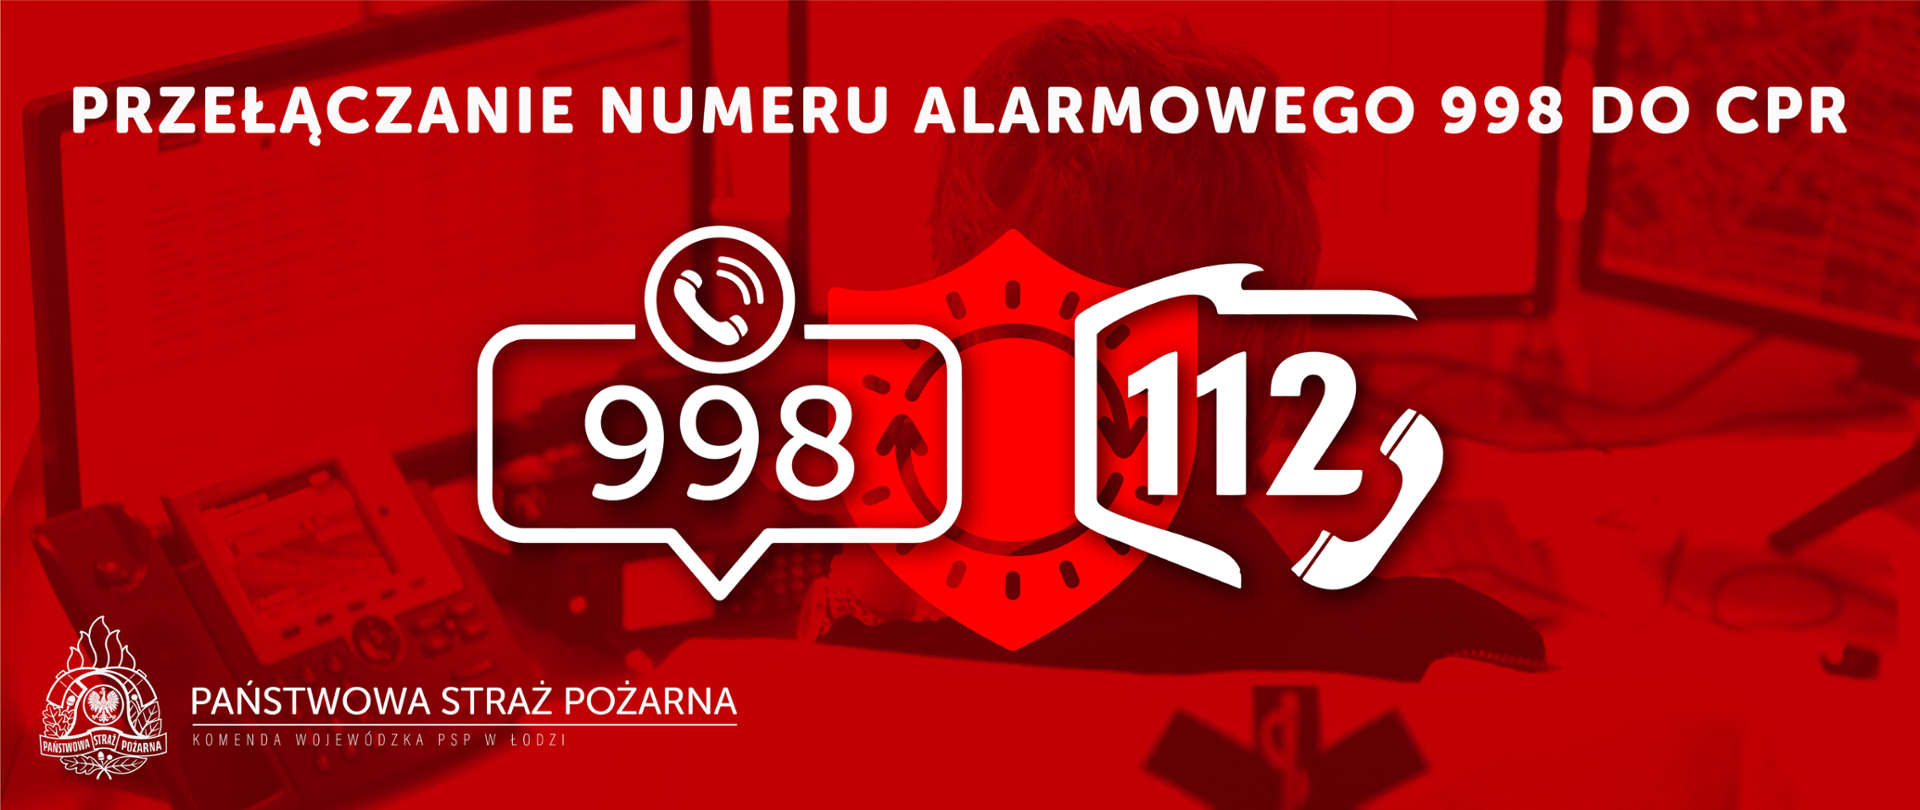 Zdjęcie przedstawia folder z przełączeniem numeru alarmowego 998 na numer 112, na czerwonym tle widoczne numery 998 i 112 oraz logo PSP